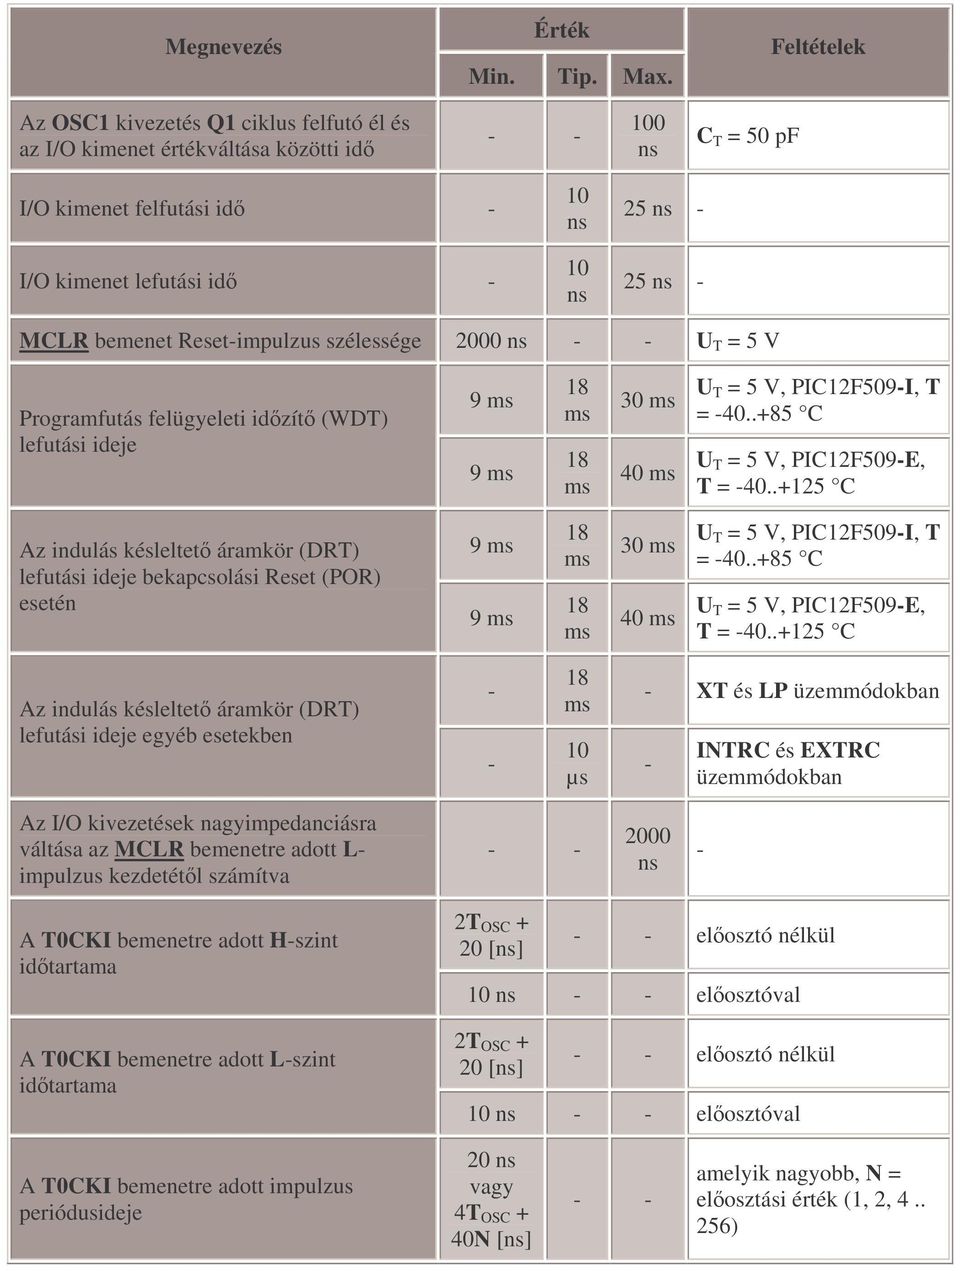 MCLR bemenet Reset-impulzus szélessége 2000 ns - - U T = 5 V Programfutás felügyeleti idzít (WDT) lefutási ideje 9 ms 9 ms 18 ms 18 ms 30 ms 40 ms U T = 5 V, PIC12F509-I, T = -40.